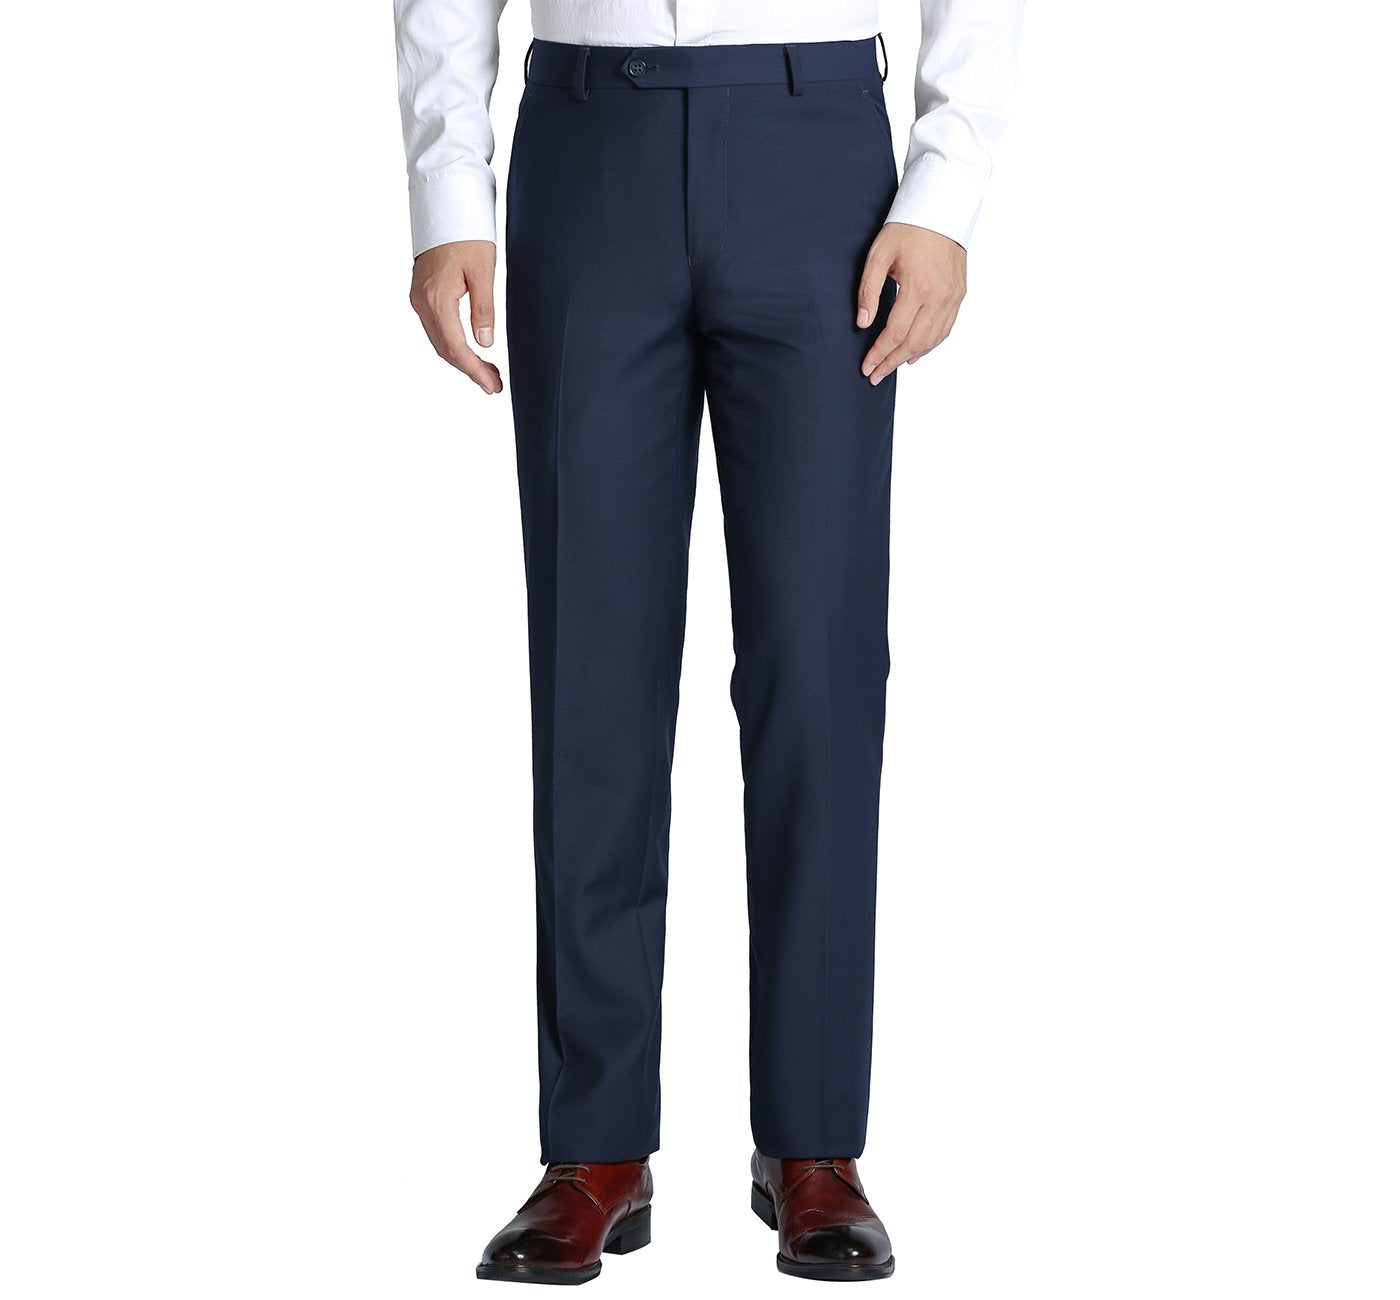 201-19 Men's Navy Flat Front Suit Separate Pants